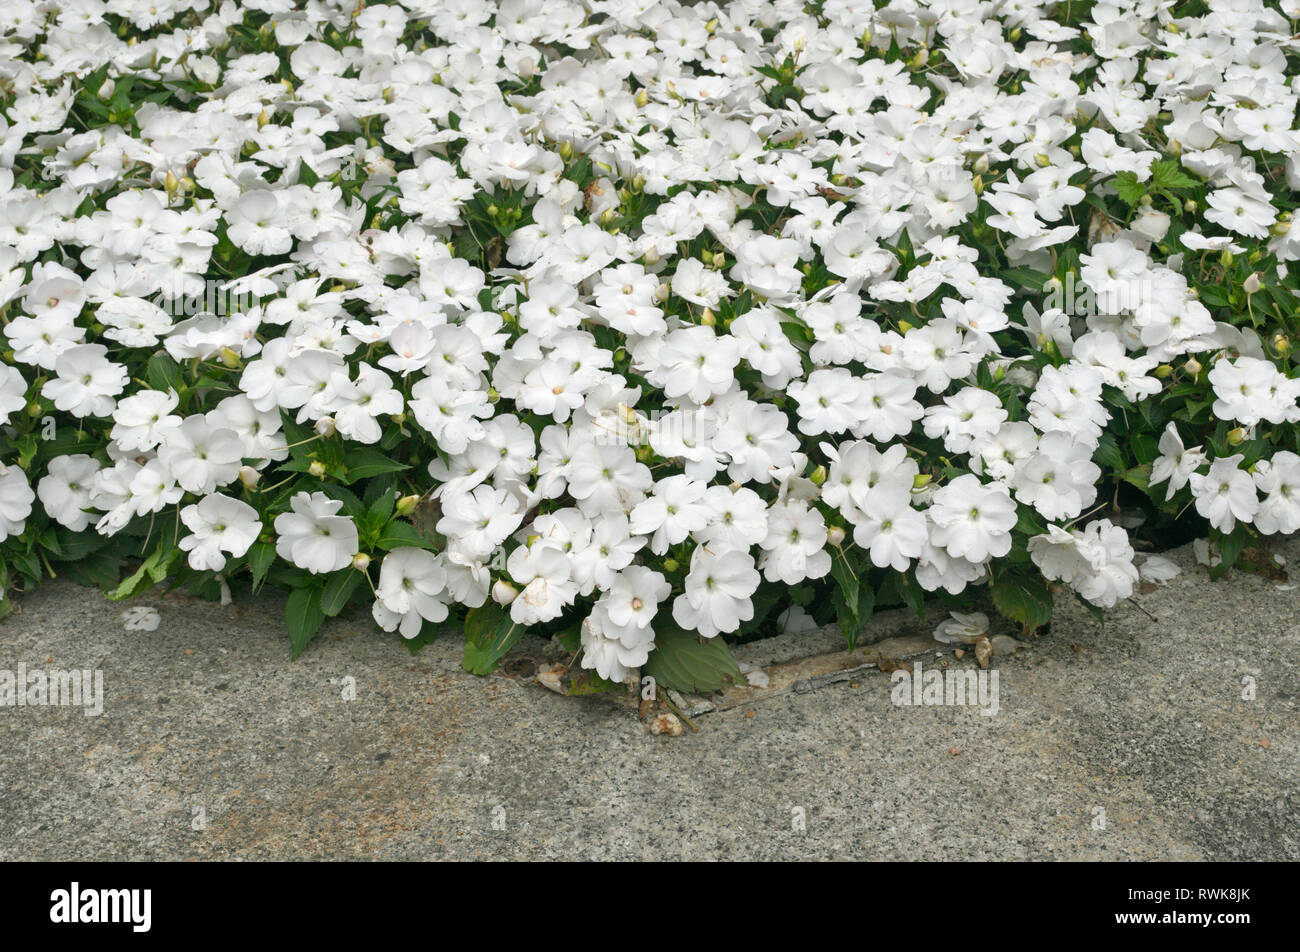 Nuova Guinea Impatiens fiori bianchi aiuola Foto Stock